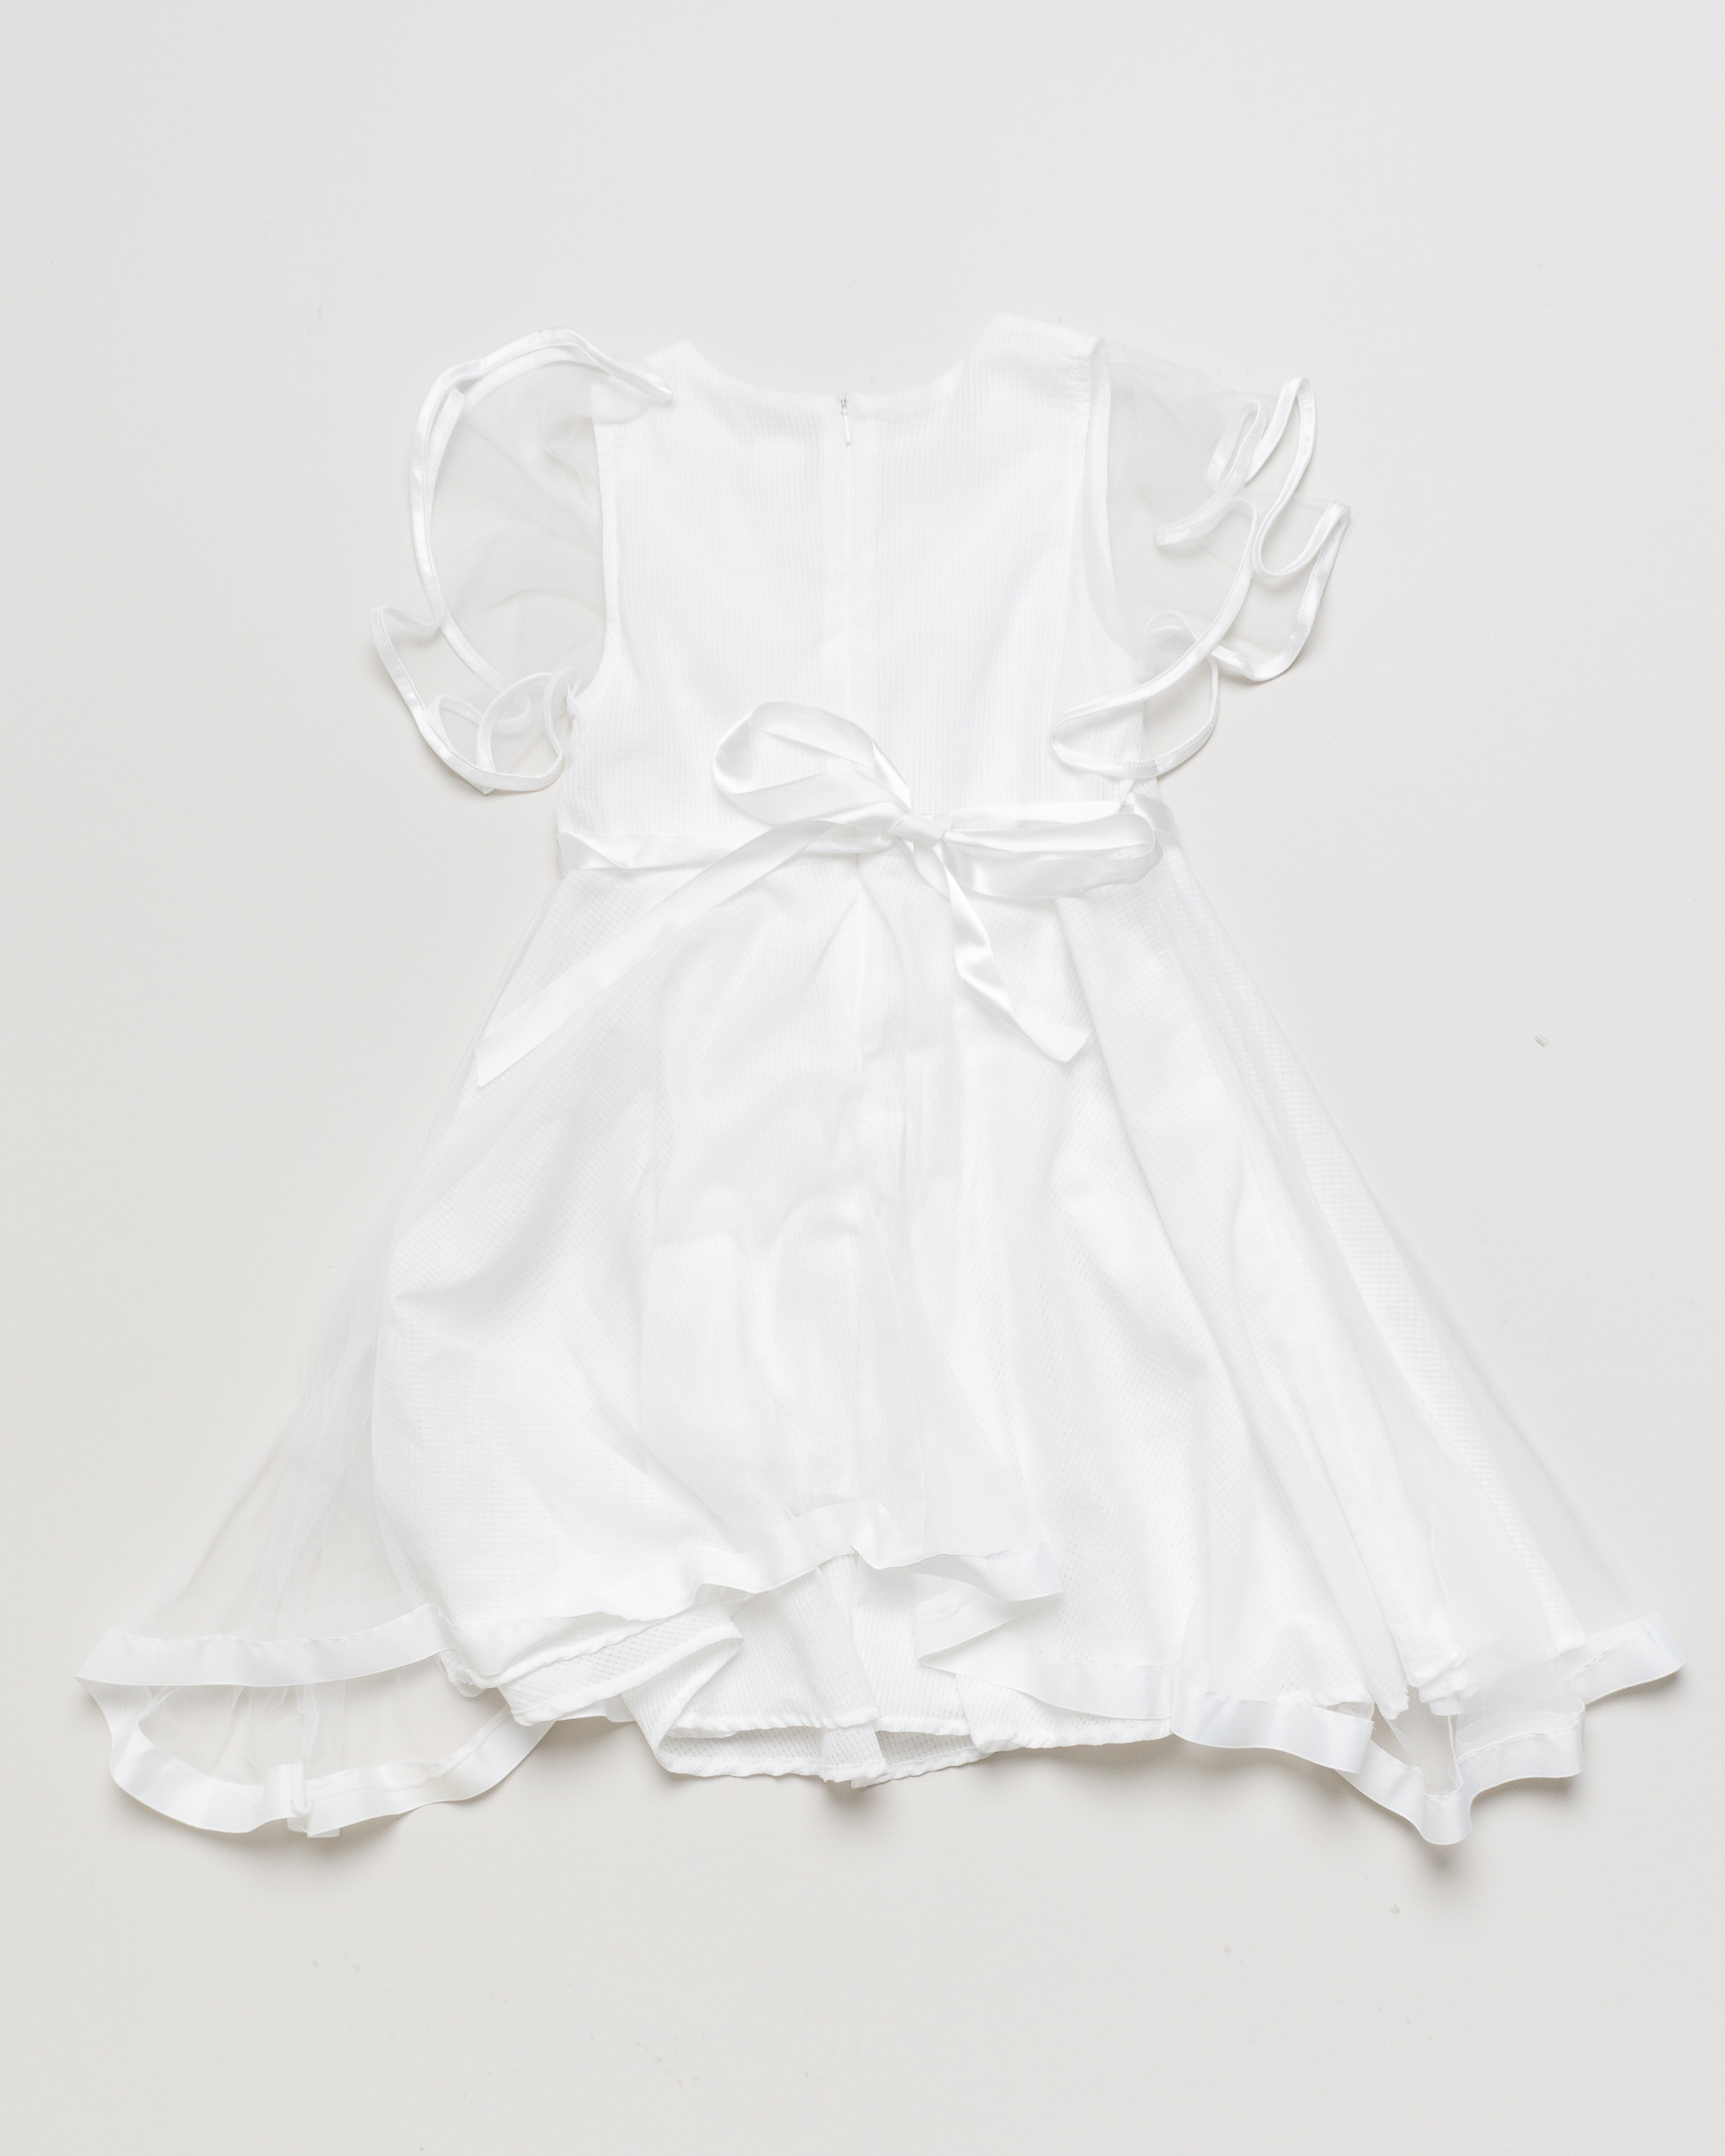 1 Kleid Gr. 122-134 – weiß Rüschen Schleife Satin Kurzarm Festlich